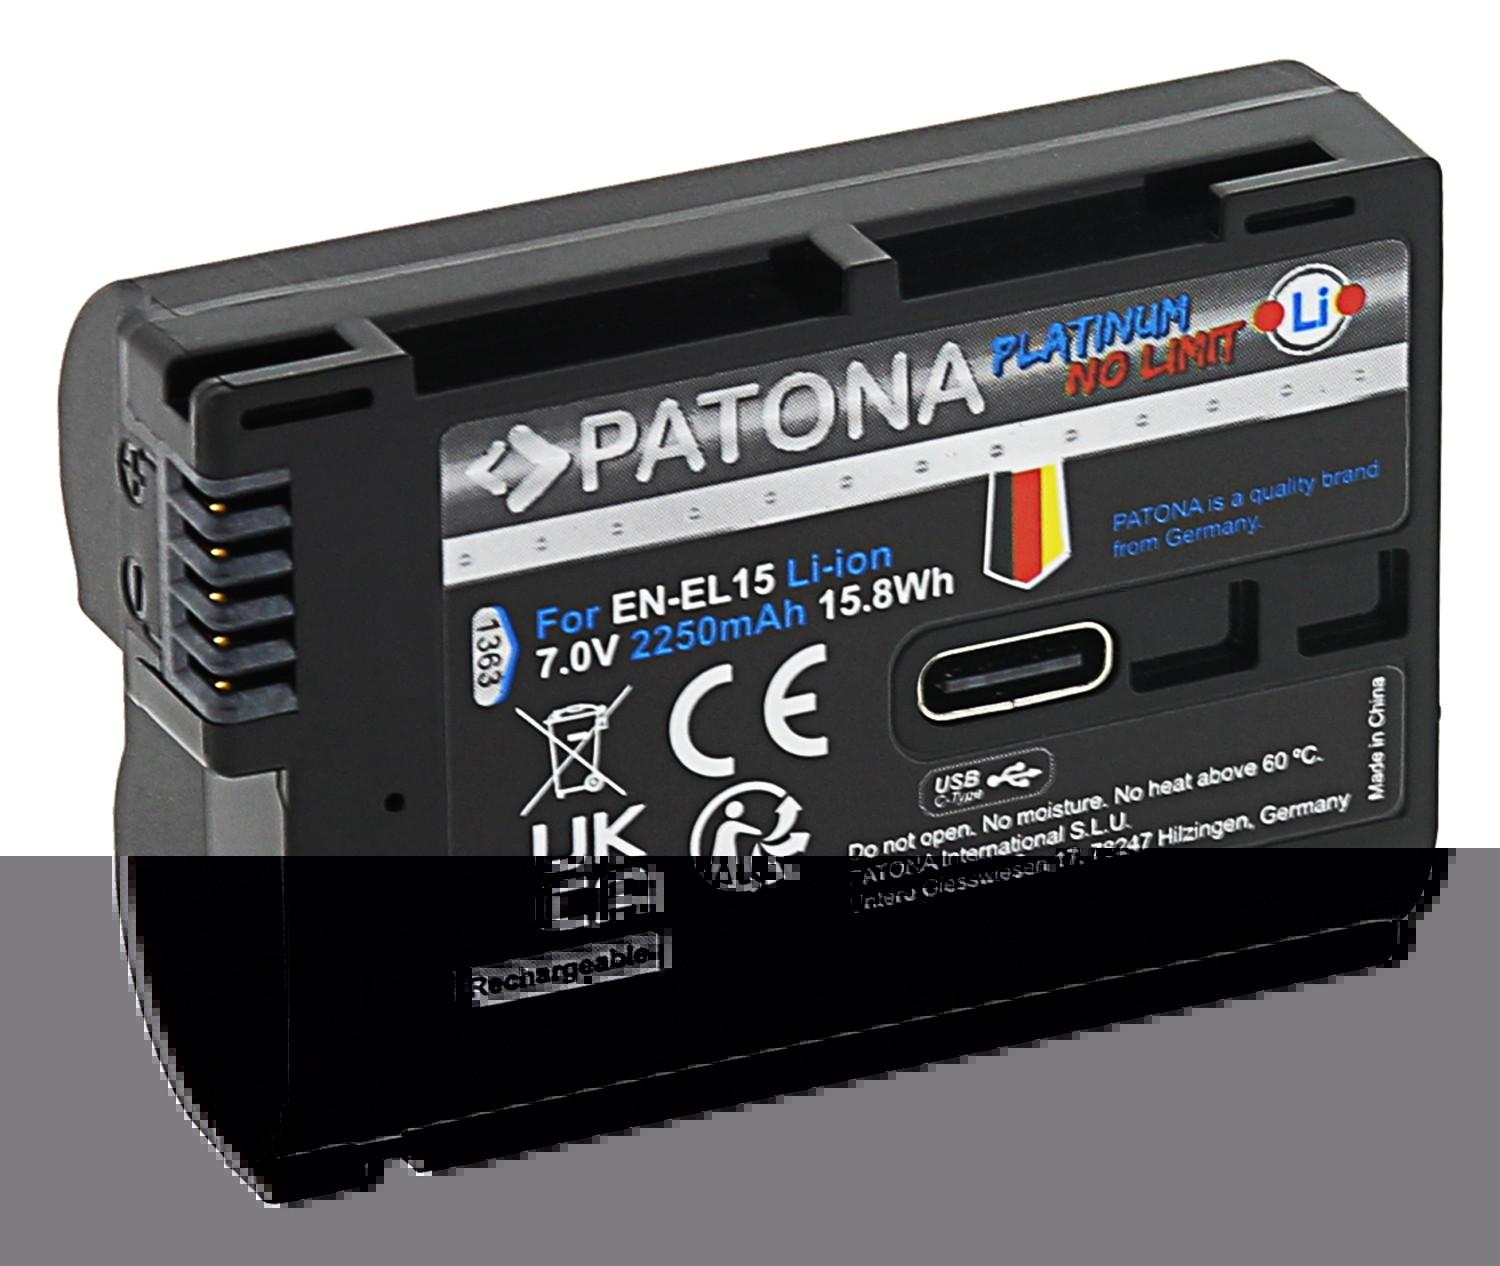 Patona  PATONA 1363 batterie de caméra/caméscope Lithium-Ion (Li-Ion) 2250 mAh 